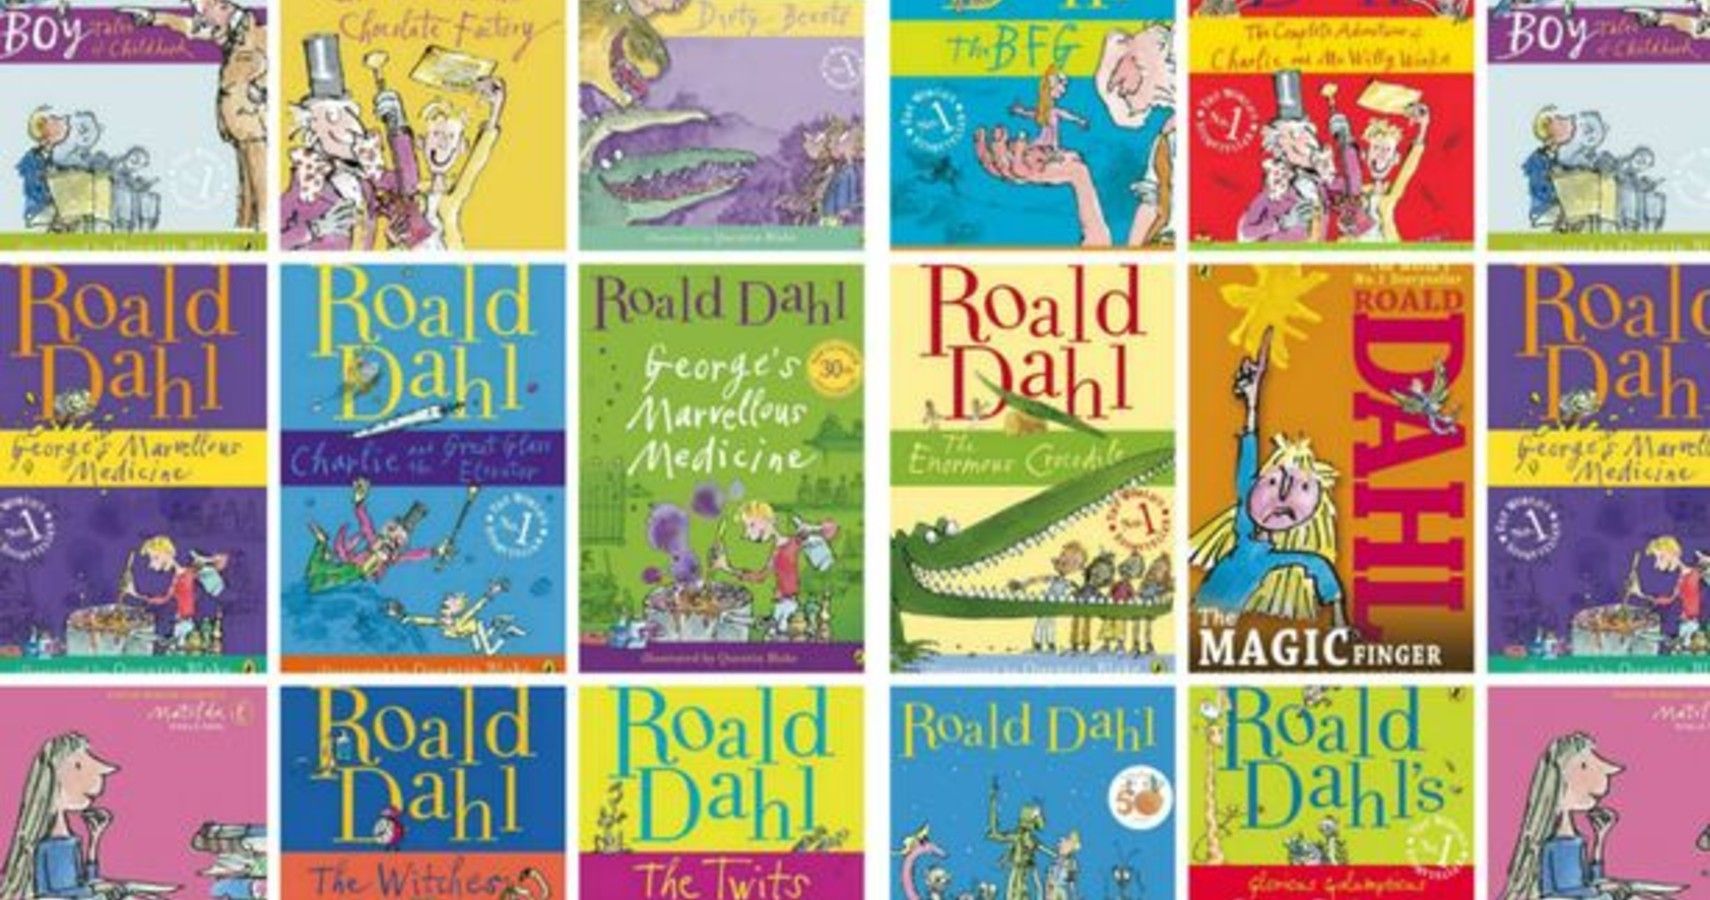 Roald-Dahl-Feature